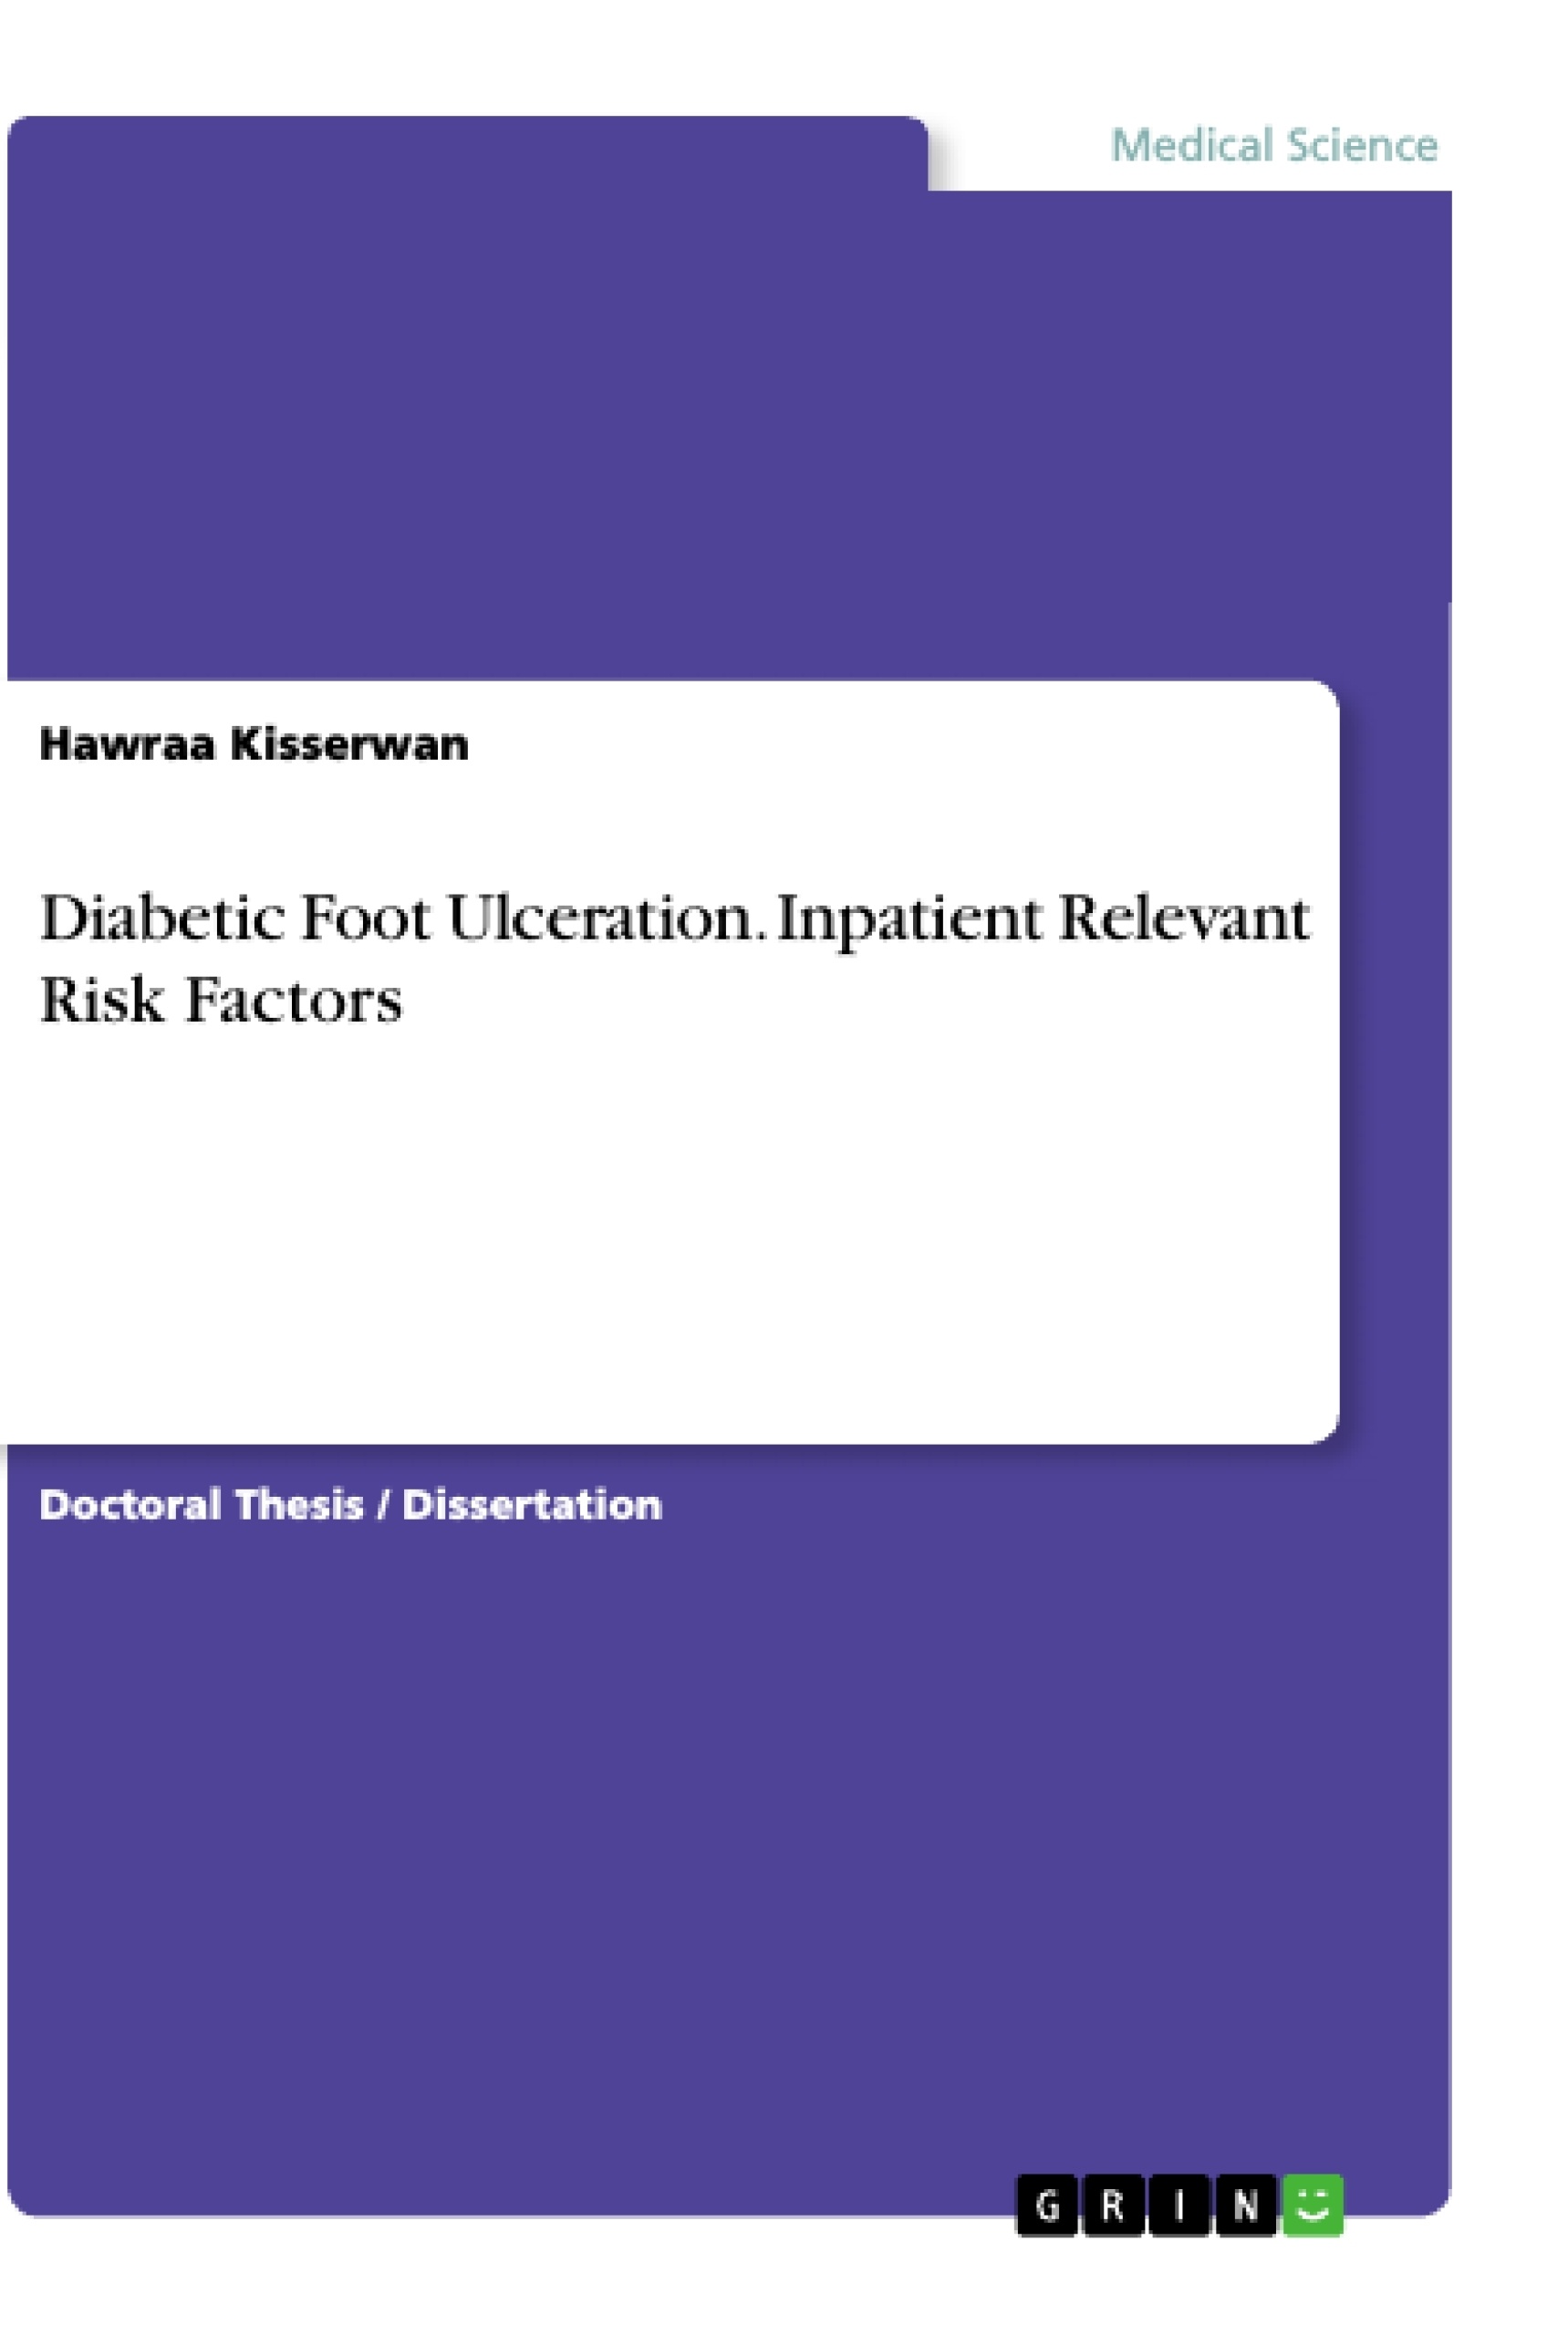 Title: Diabetic Foot Ulceration. Inpatient Relevant Risk Factors